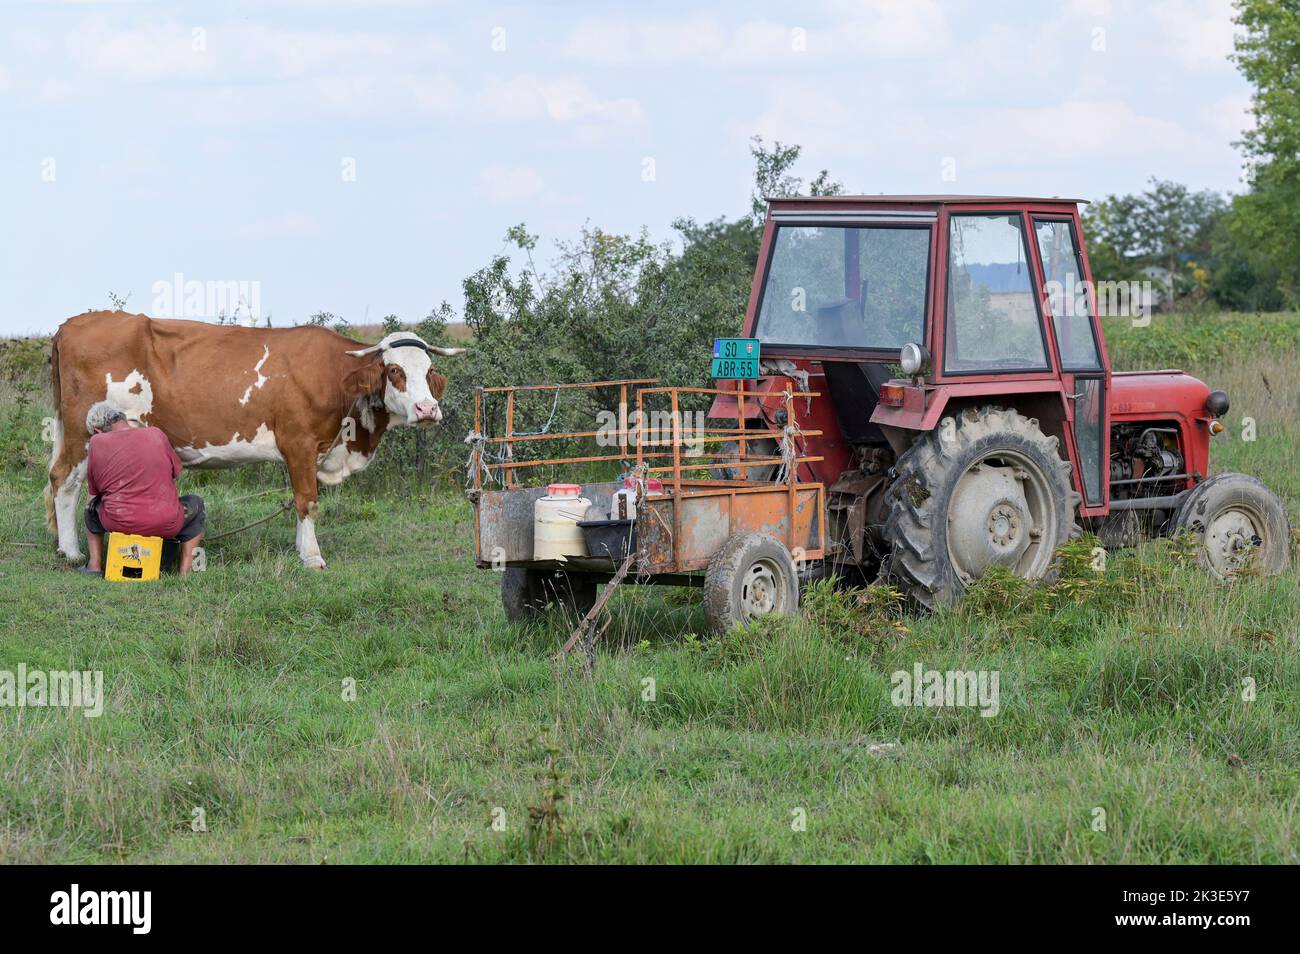 SERBIE, région Voïvodine, petit agriculteur qui traite sa vache sur le terrain, vieux tracteur IMT / SERBIEN, région Voïvodine, Alter IMT Traktor, Kleinbauer melkt Kuh am Feldran Banque D'Images